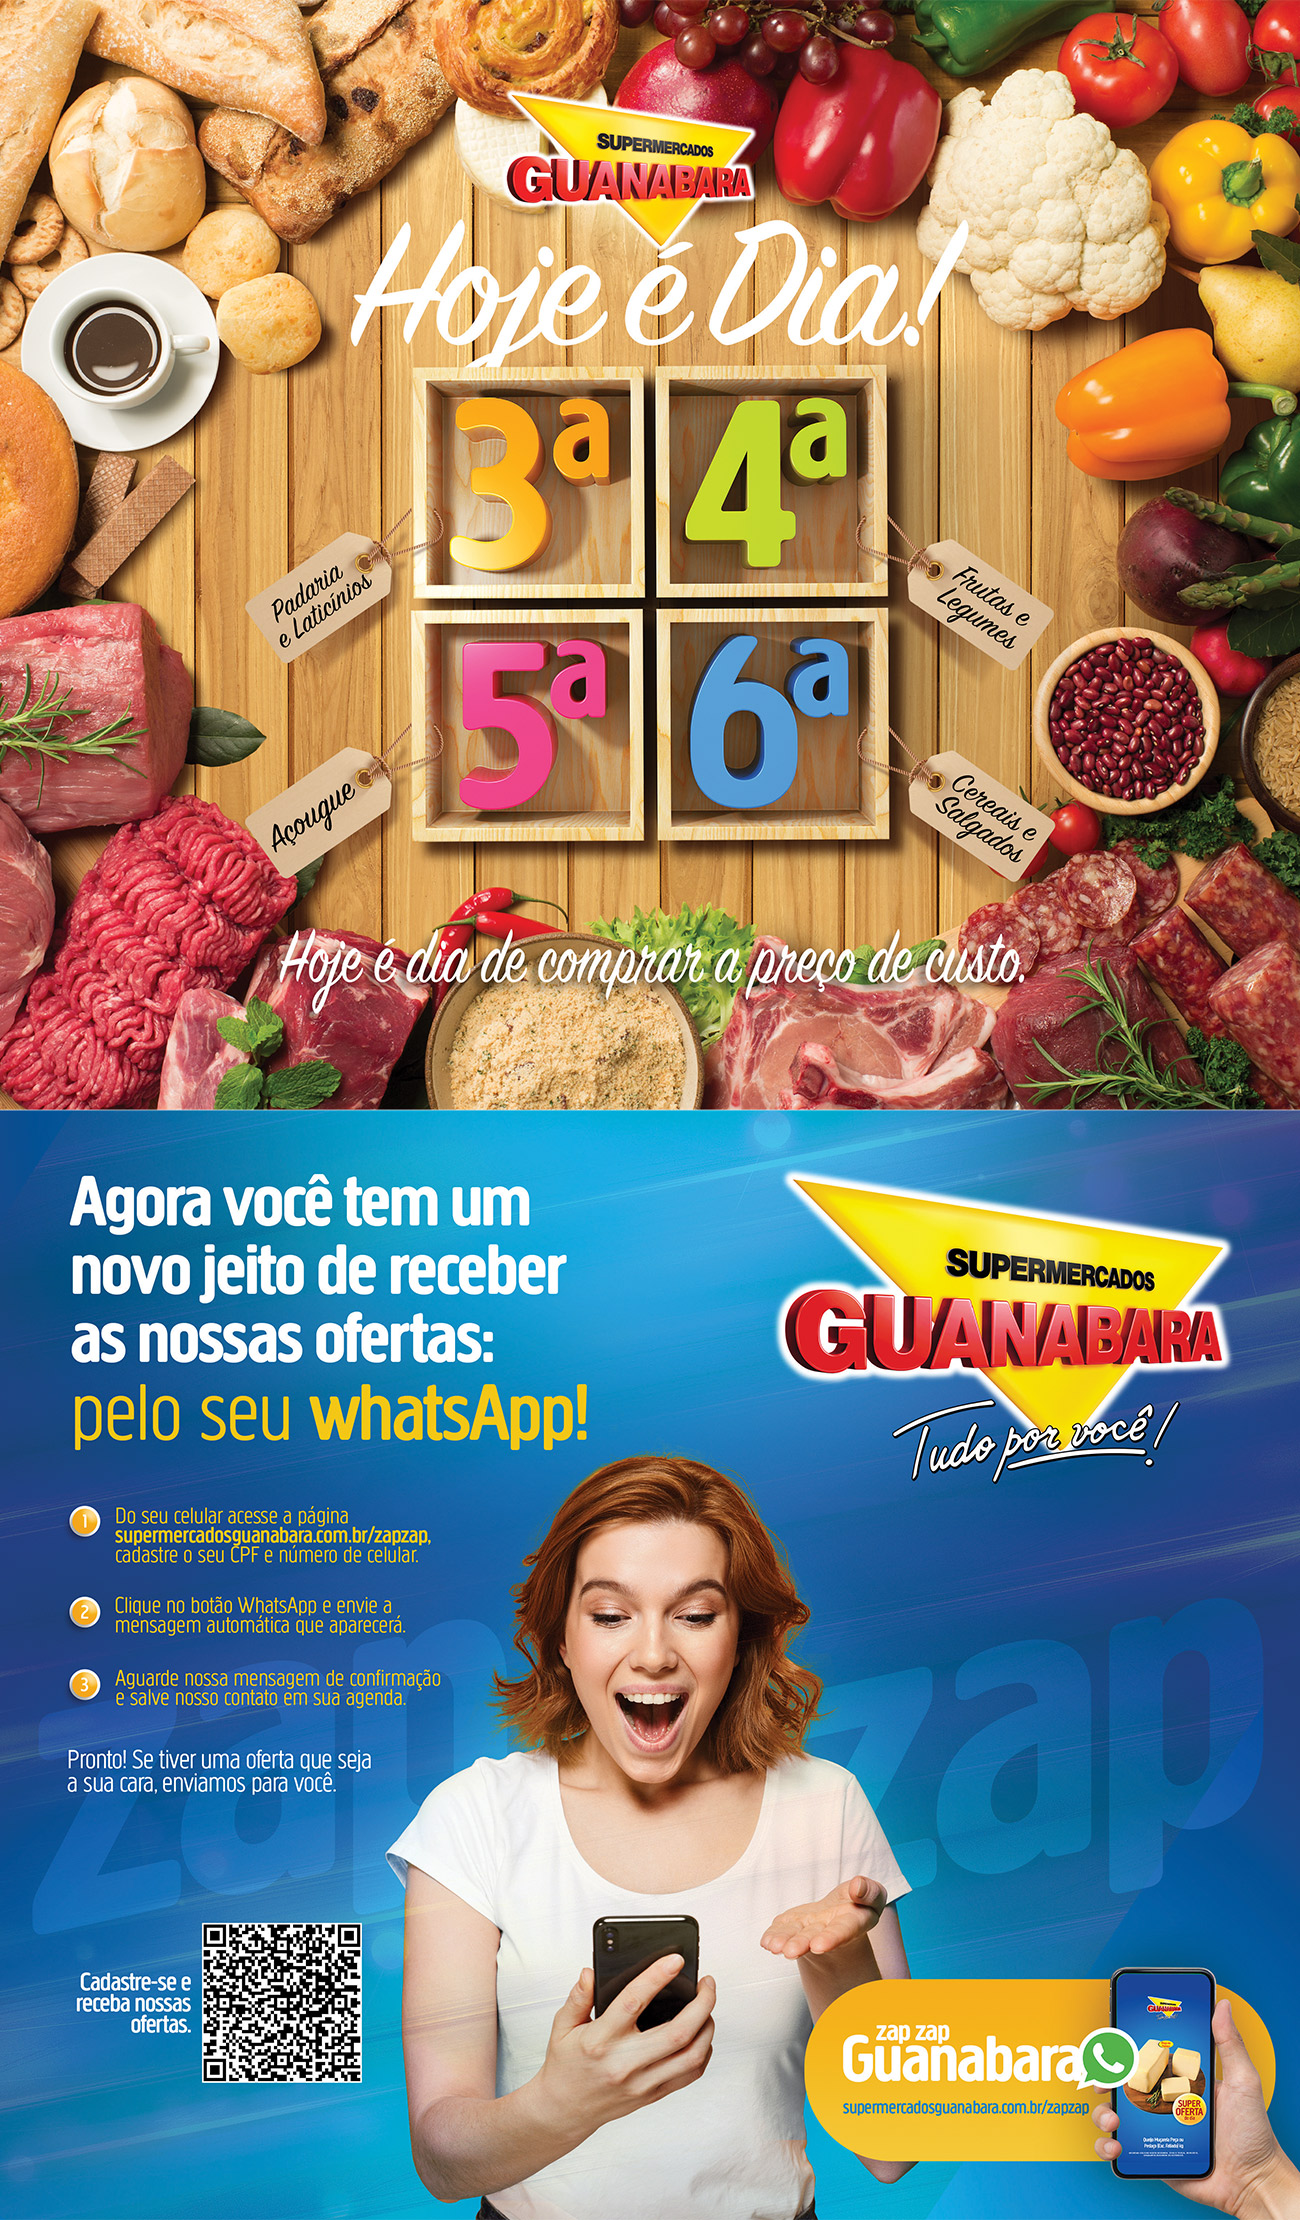 Supermercados Guanabara - É variedade que fala? A seção da Swift* no  Guanabara está repleta de coisas gostosas. De carnes e pratos prontos a  sobremesas. Vem conferir! Disponível nas seguintes lojas: Engenho